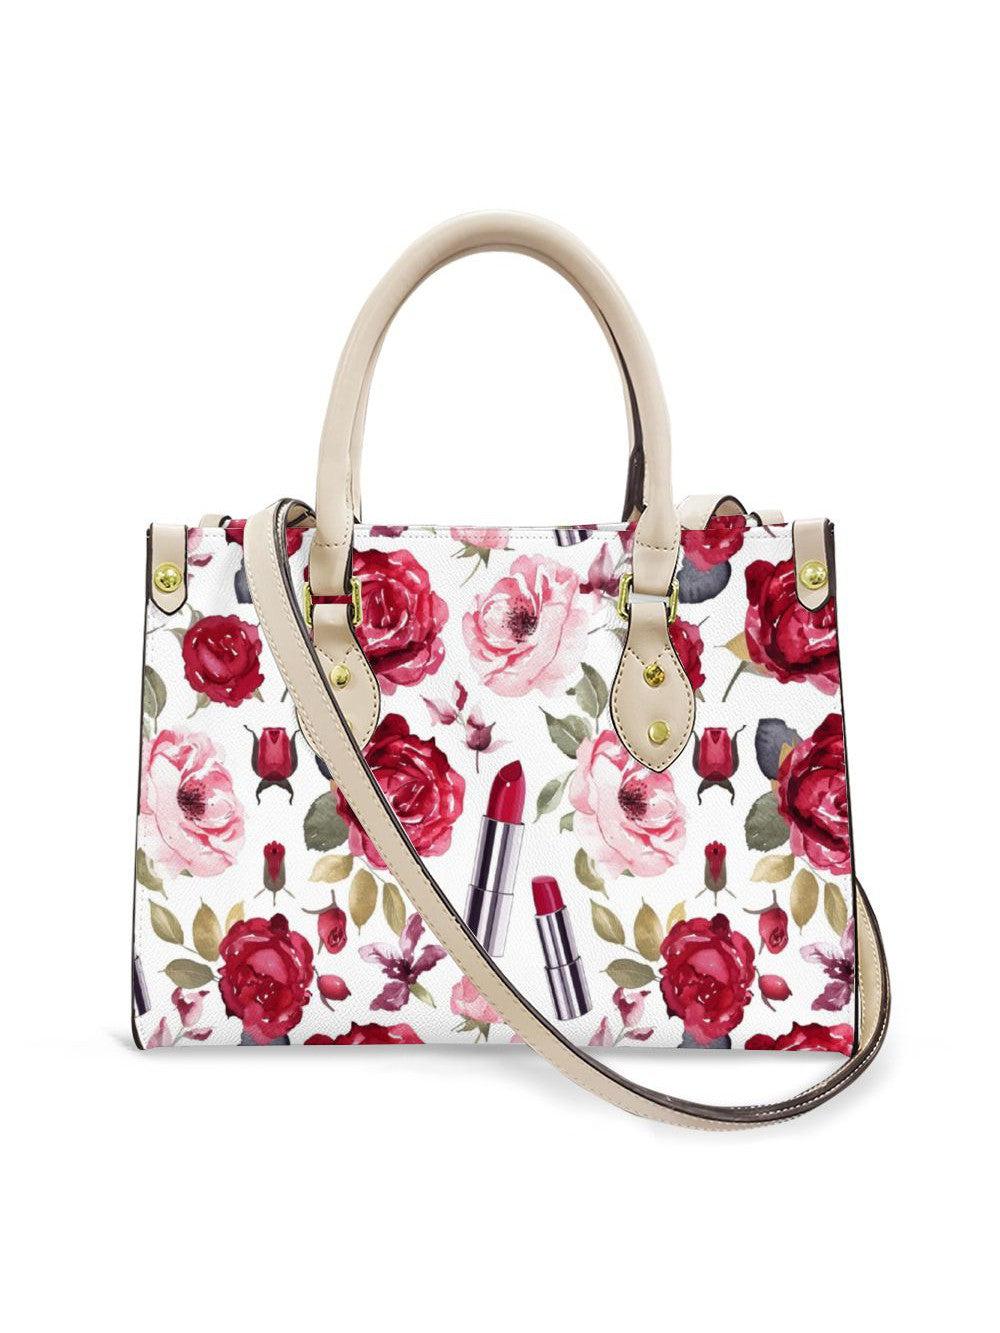 Roses & Ruby Lips Handbag